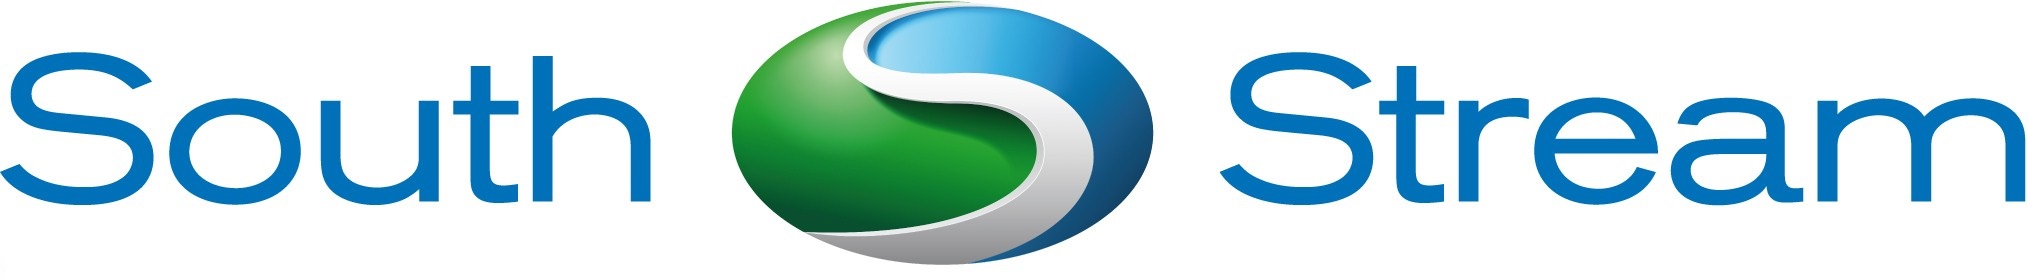 south stream logo